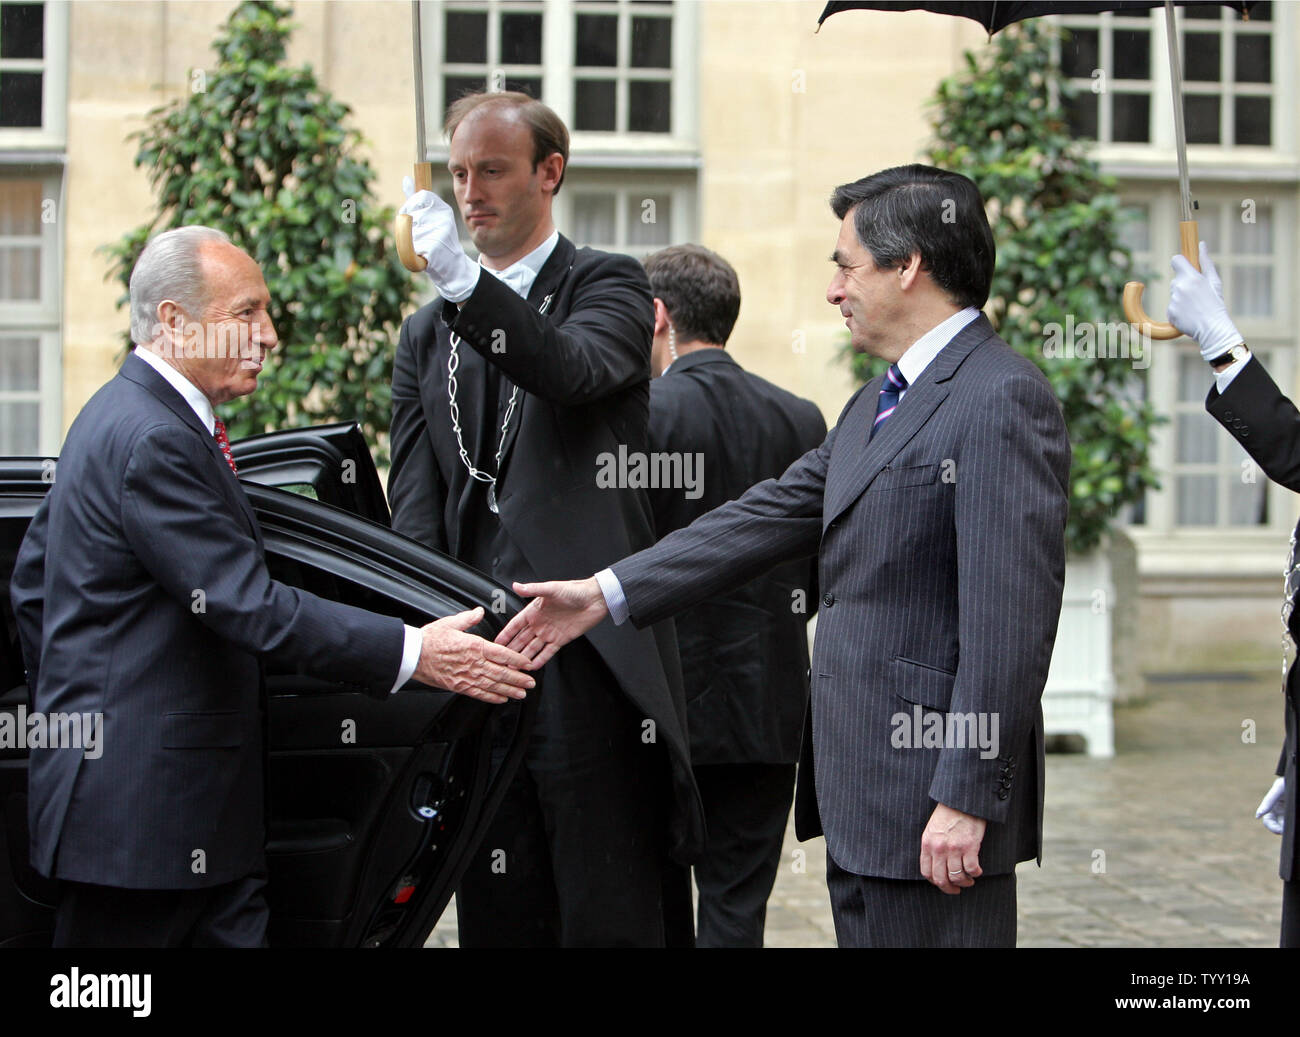 Le président israélien Shimon Peres (L) est accueilli par le Premier ministre français François Fillon à son arrivée au bureau du premier ministre à Paris, le 11 mars 2008. Peres, qui est en France pour une durée de cinq jours est le premier chef de l'Etat à effectuer une visite d'état depuis la France. (Photo d'UPI/Eco Clement) Banque D'Images